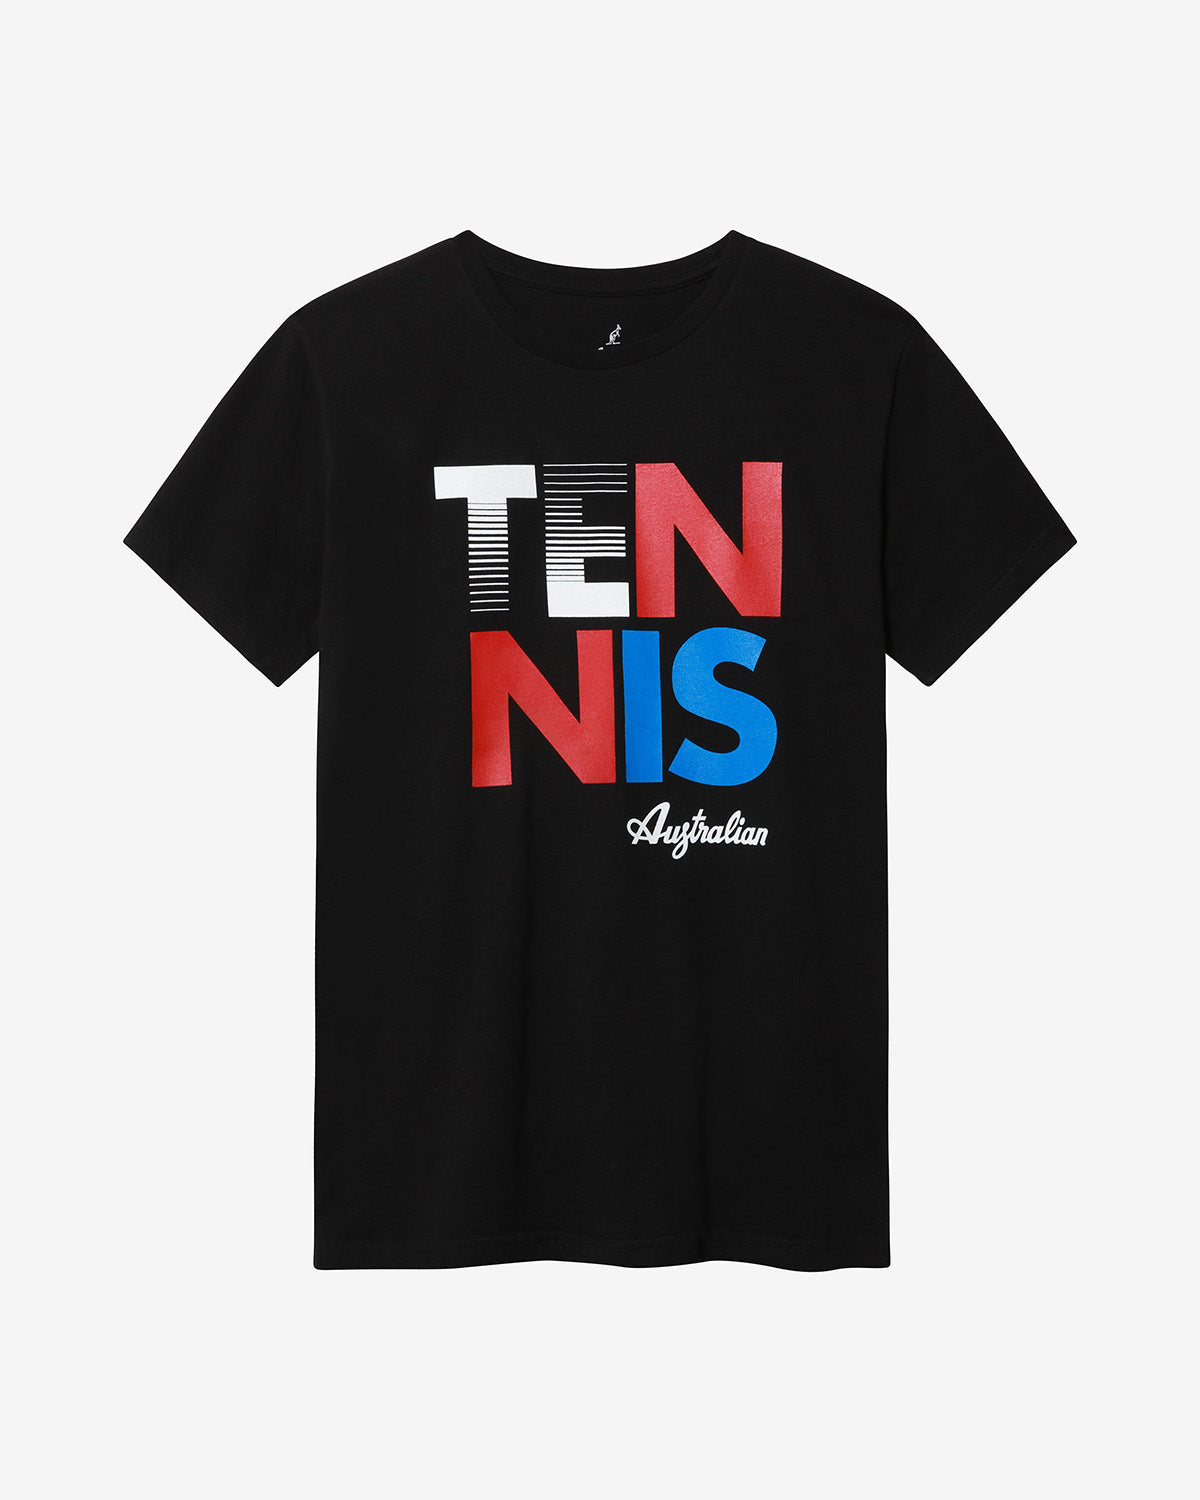 Tennis T-Shirt: Australian Tennis